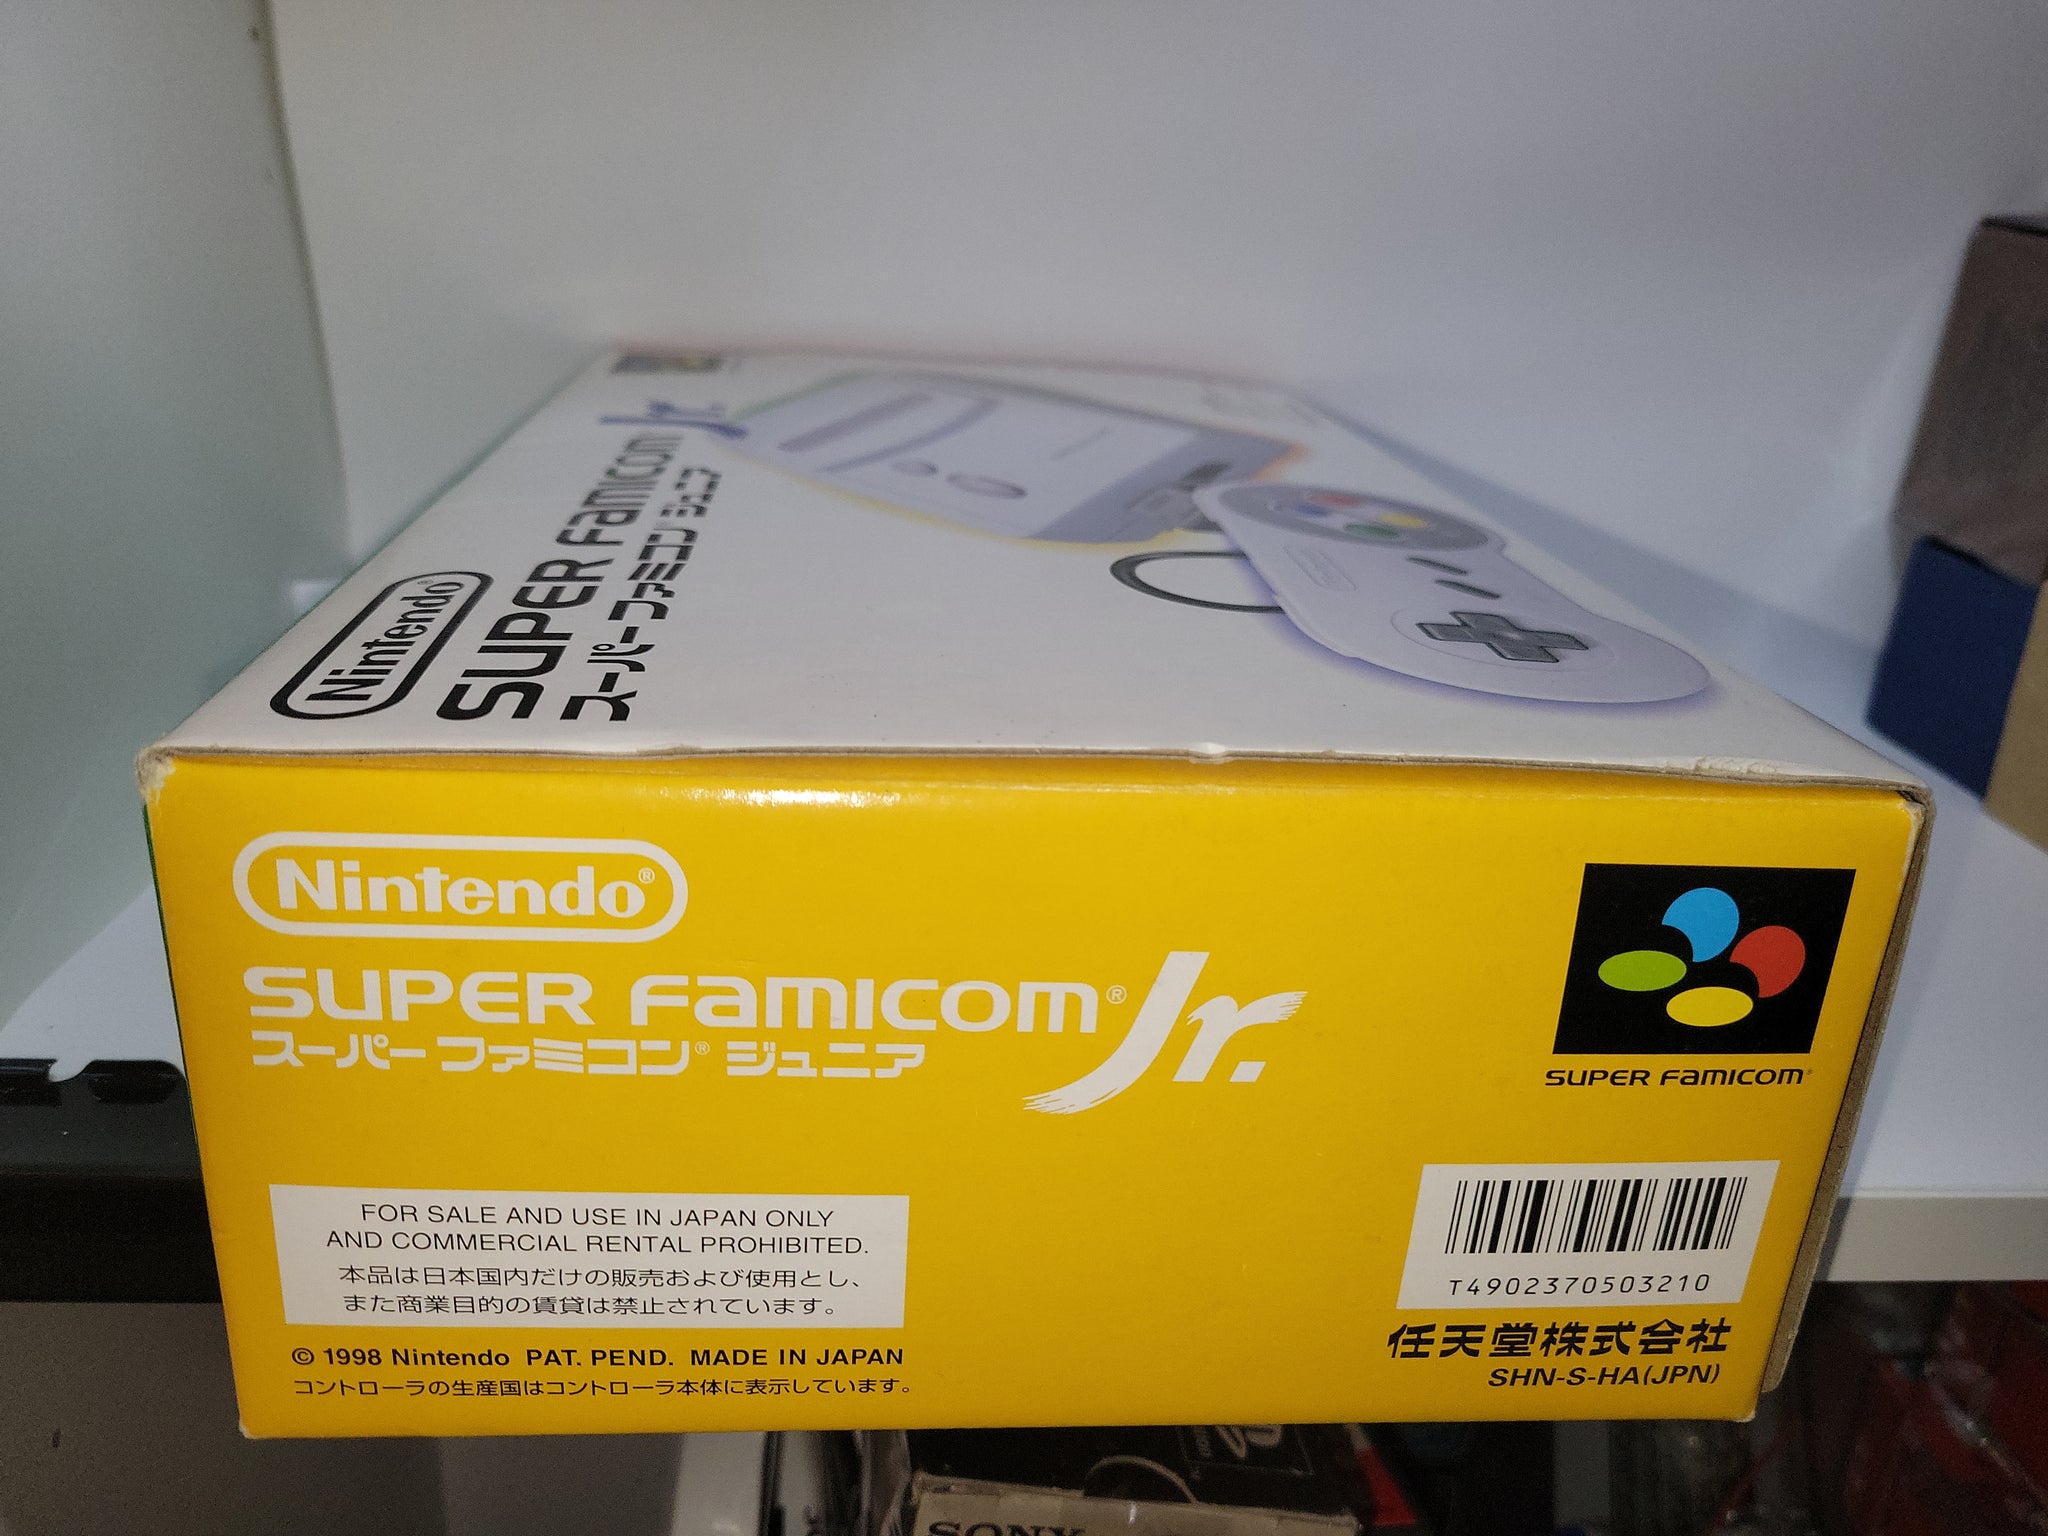 Super Fanicom Jr. Console - Nintendo Sfc Super Famicom – The